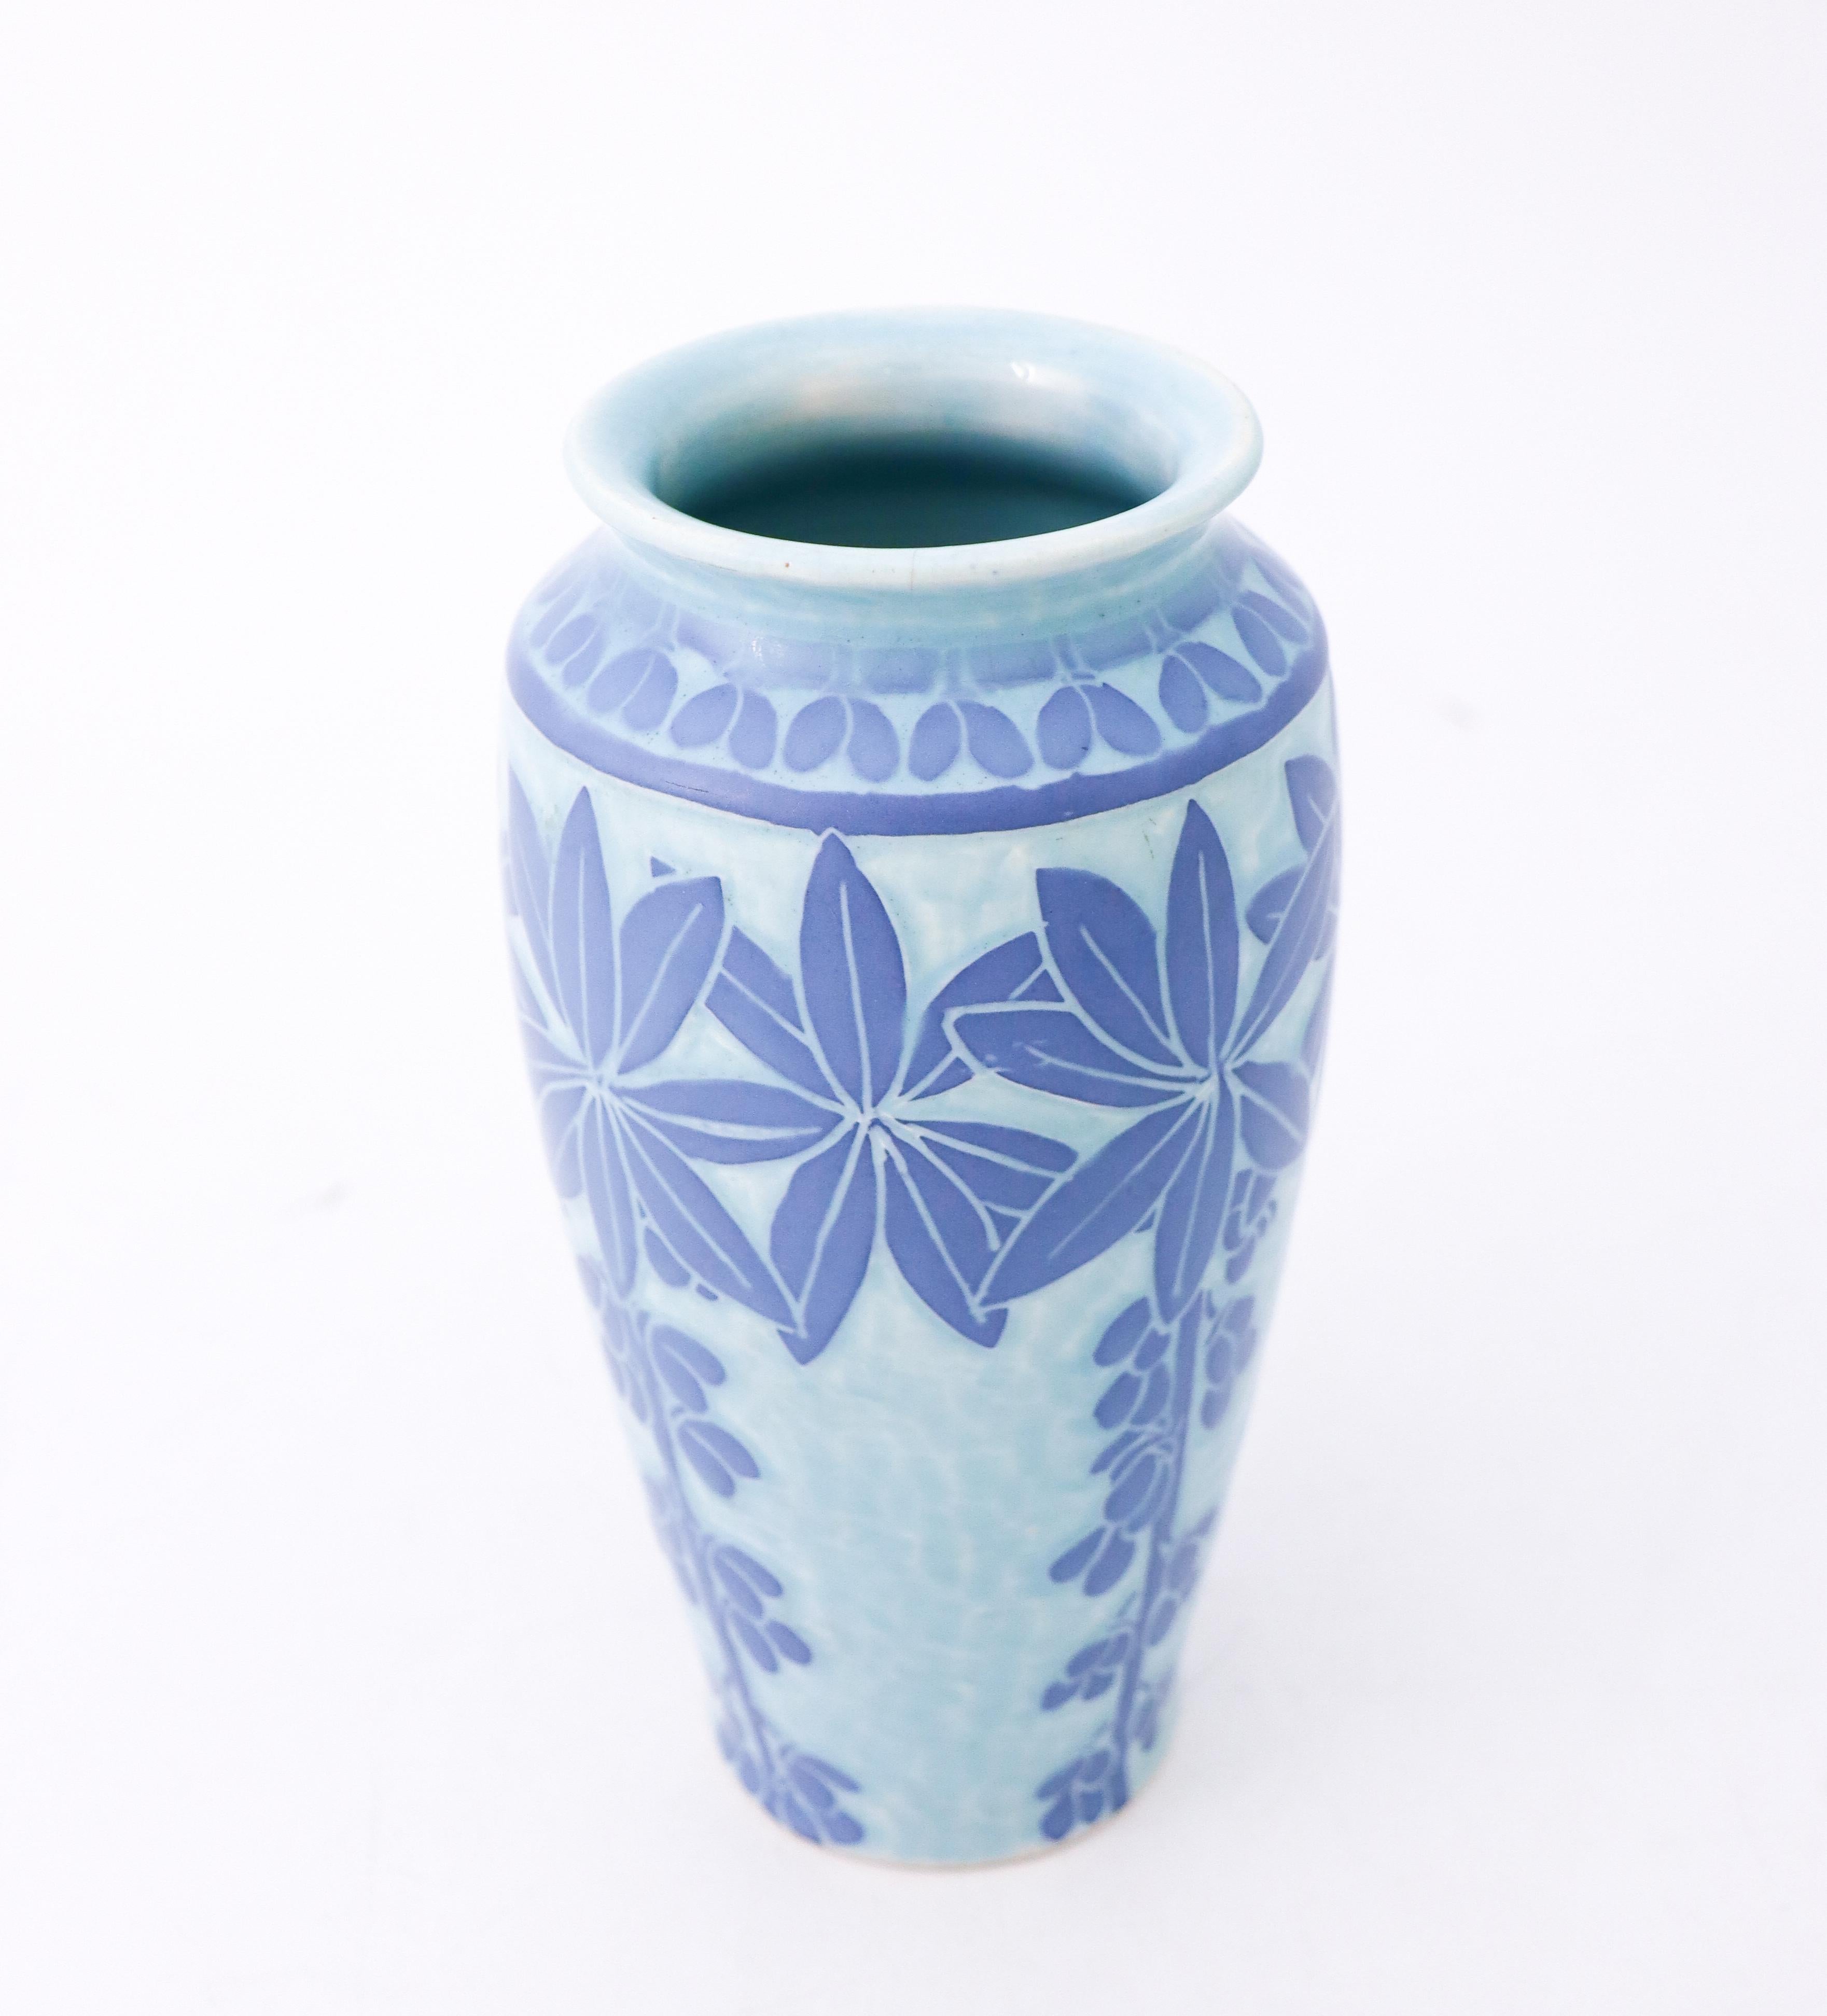 20th Century Art Nouveau Vase Ceramics, Floral Turquoise & Blue, Scandinavian Vintage, 1915